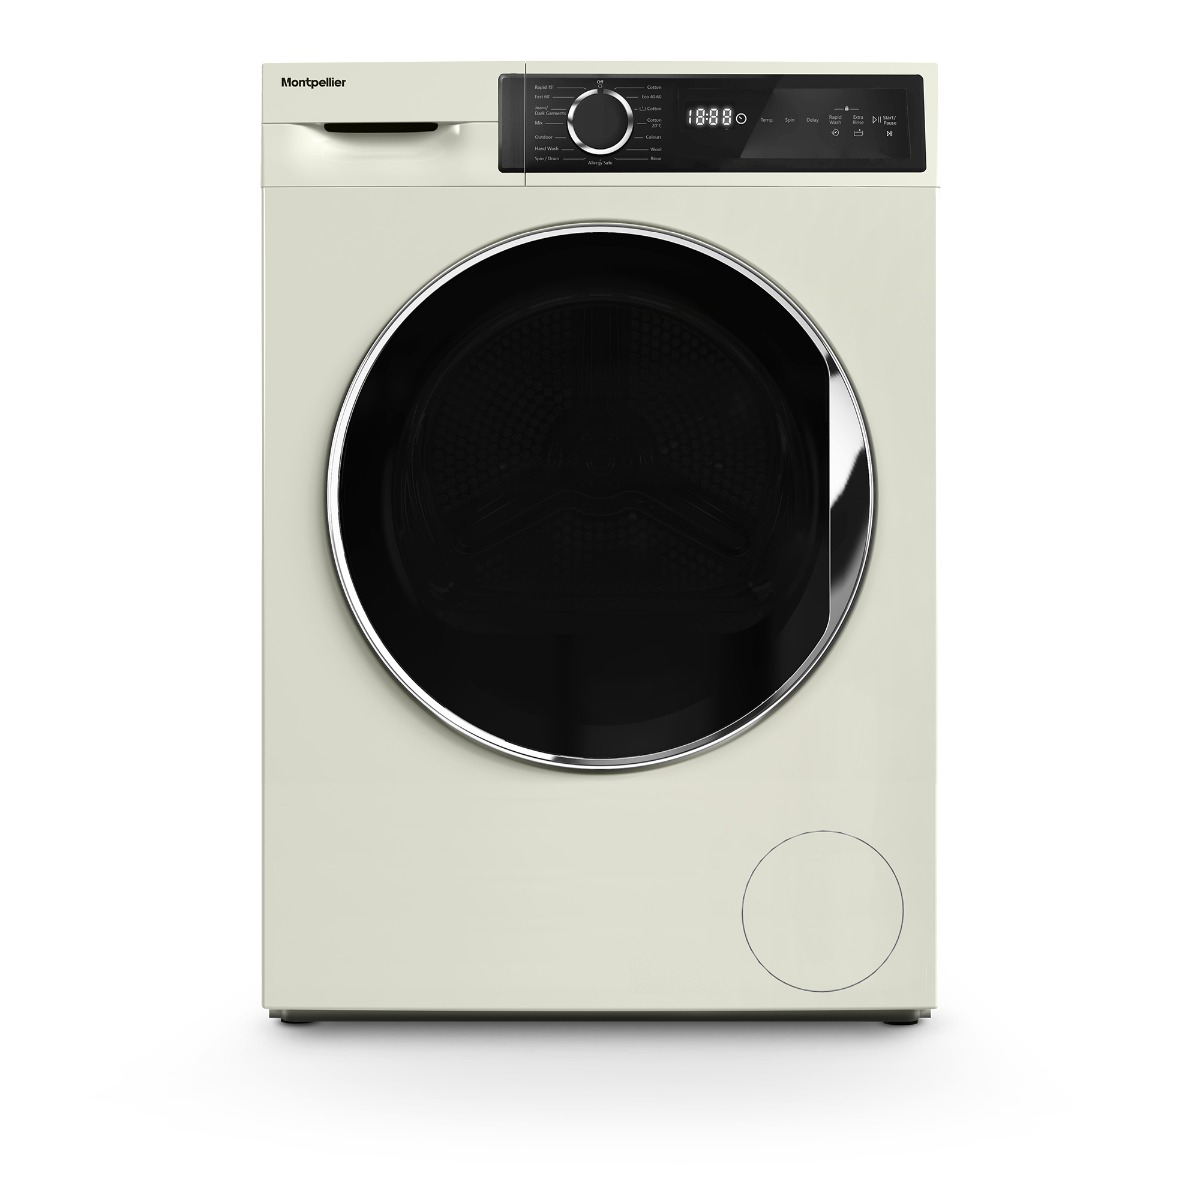 Photos - Washing Machine Montpellier MWM814BLC 8kg 1400RPM  in Cream 